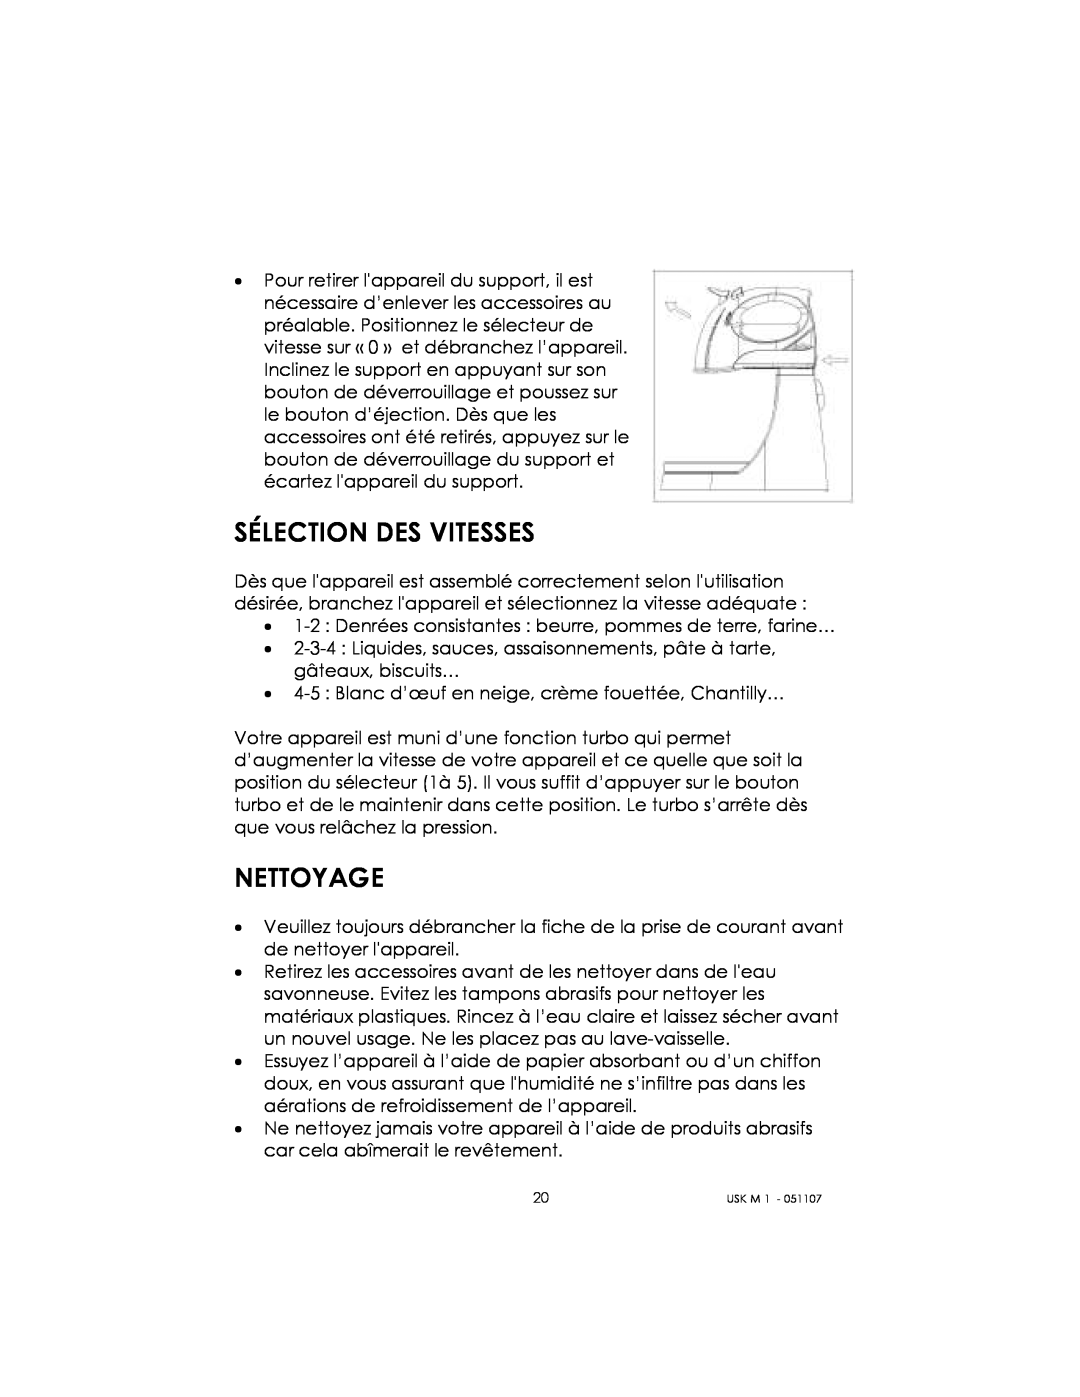 Kalorik USK M 1 manual Sélection Des Vitesses, Nettoyage 